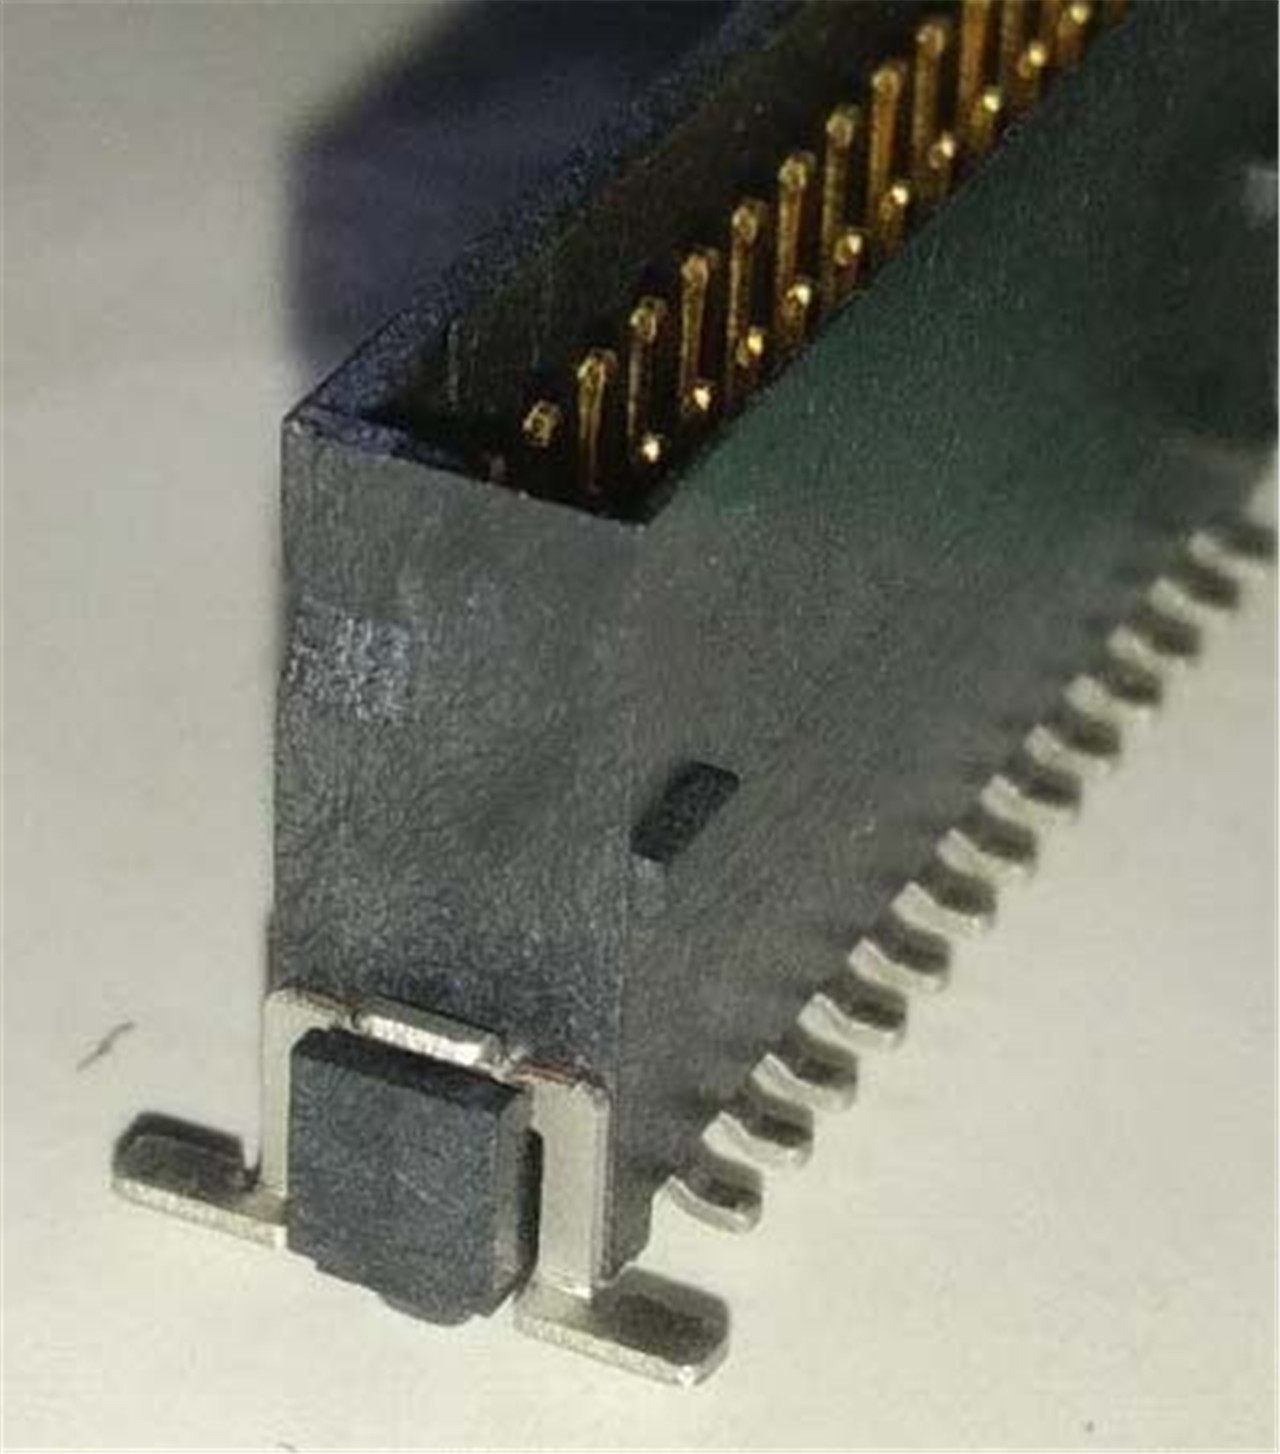 CONECTOR SMC DE 1,27 mm (5)